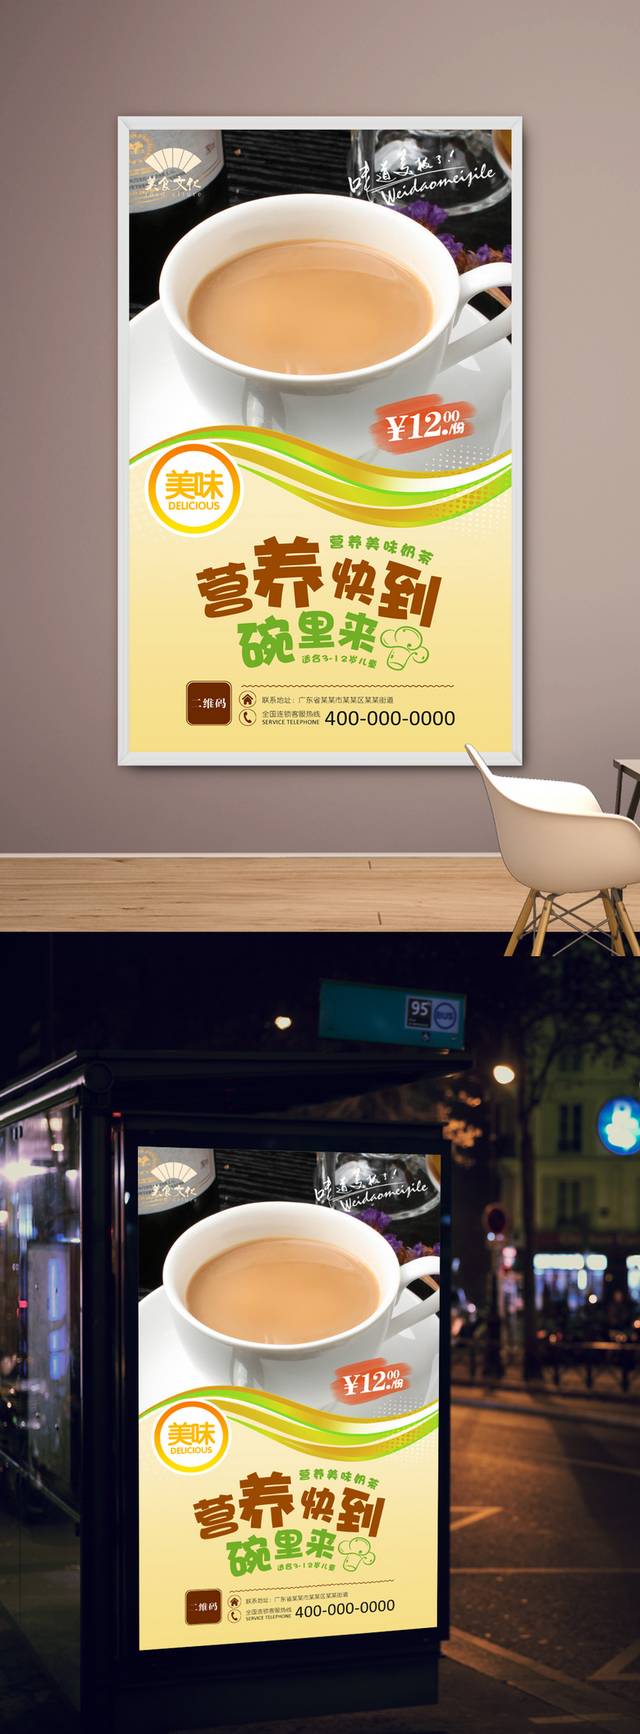 高清奶茶店宣传海报设计下载